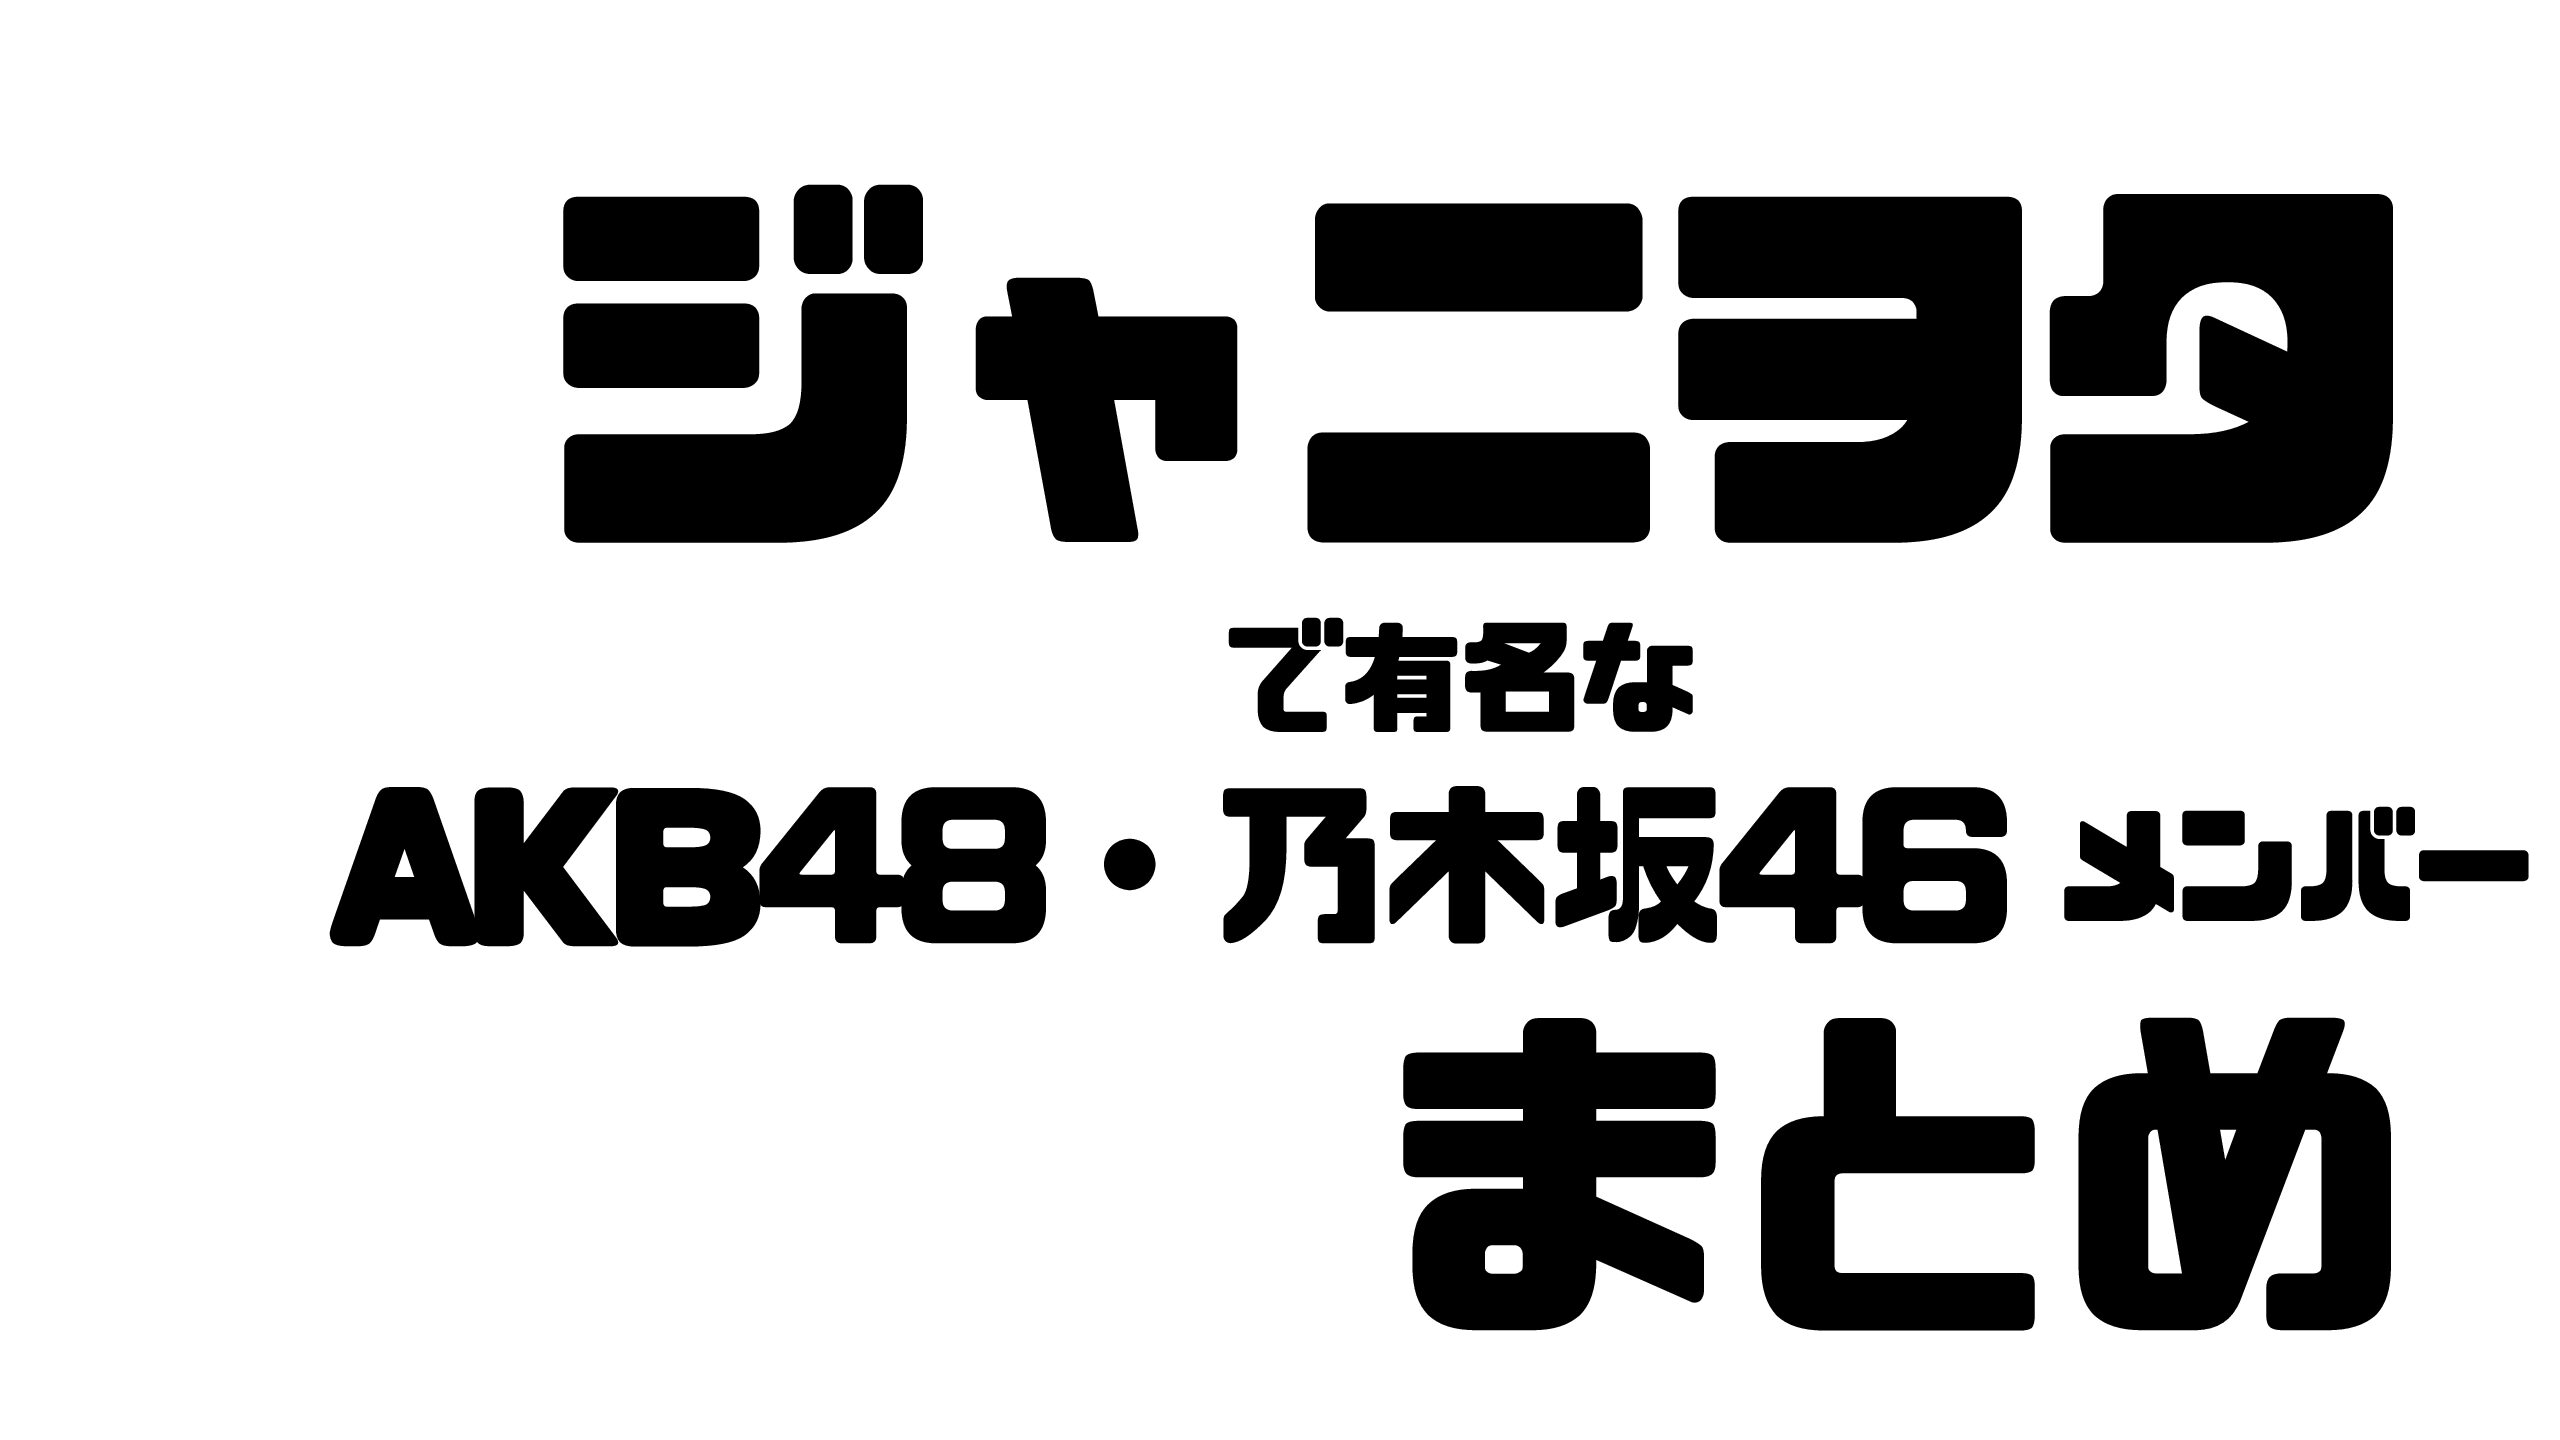 ジャニオタのakb48 乃木坂46メンバーまとめ ジャニーズファンからの反応は Mdkcブログ